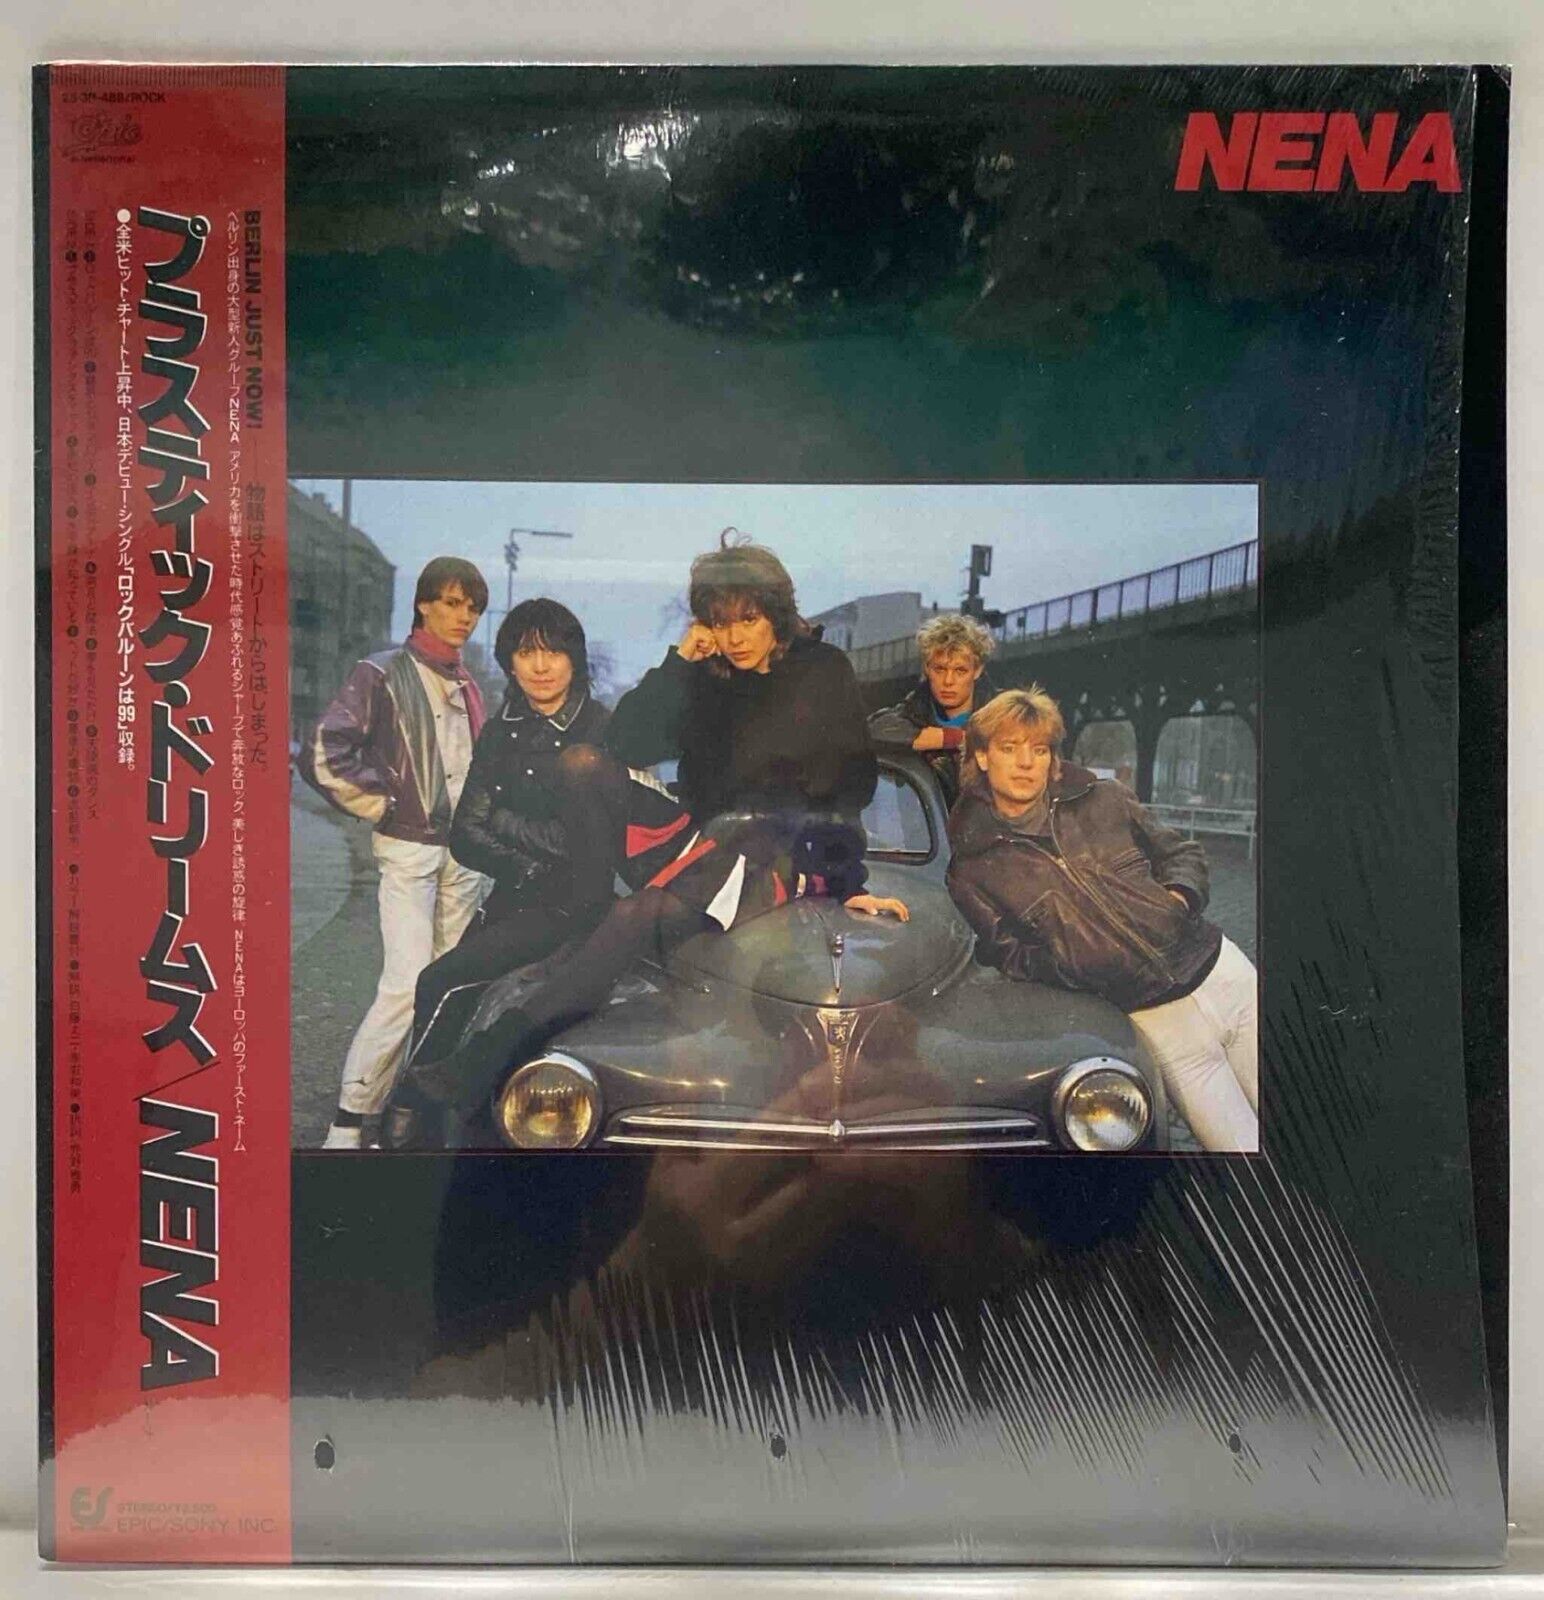 Nena - Self Titled - Japan Vinyl OBI Insert - 25 3P-488